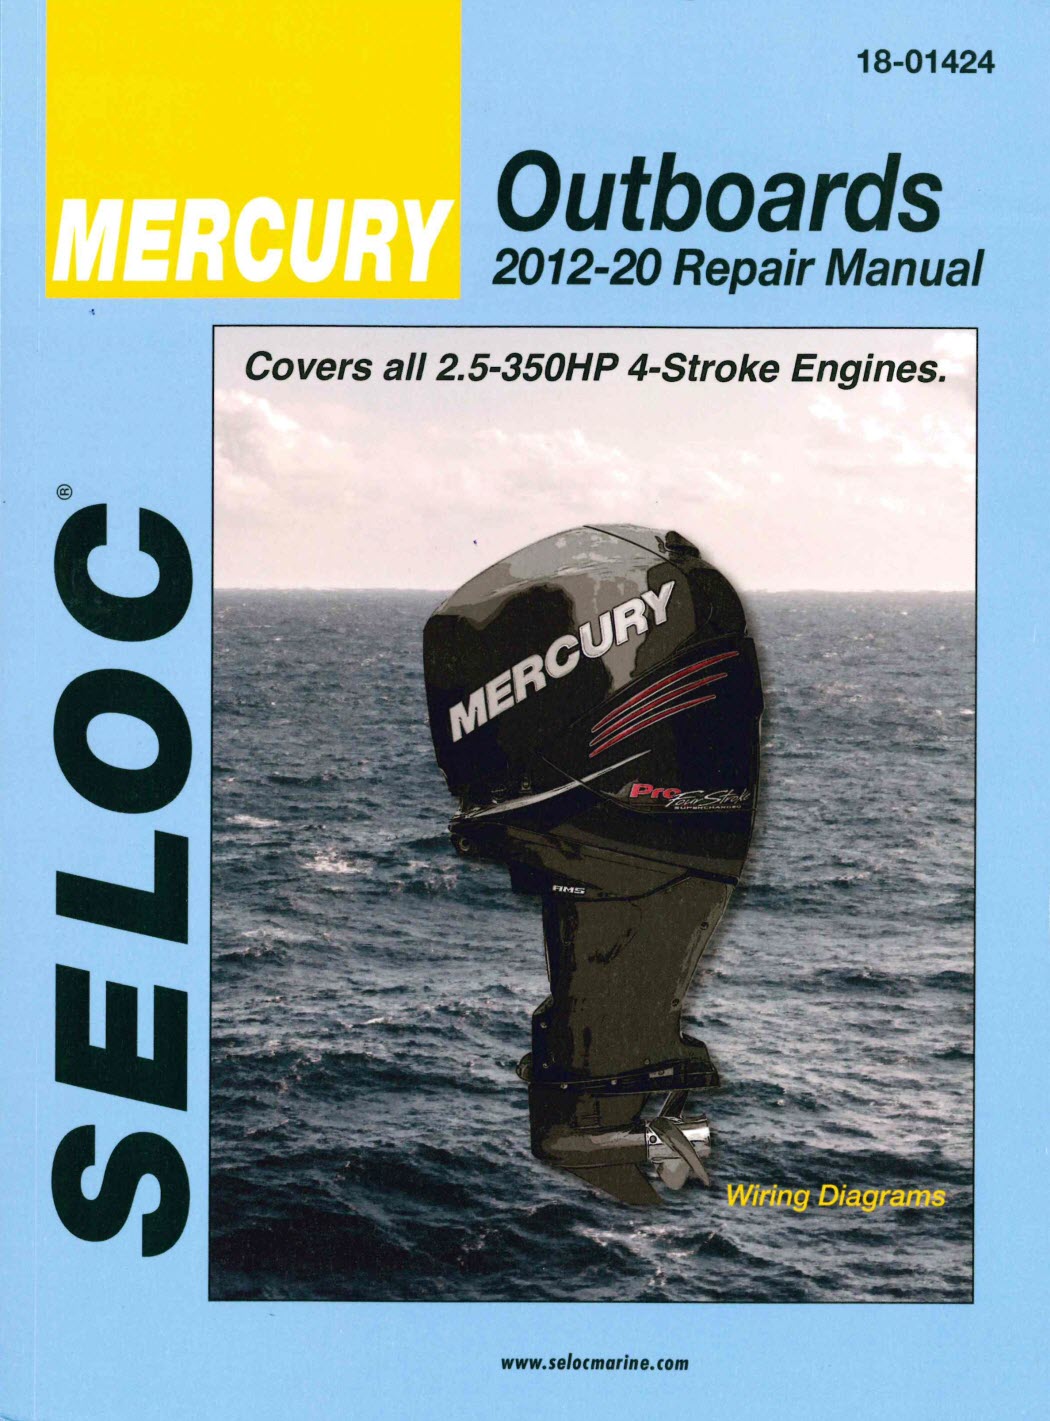 Seloc repair manual for Mercury 4-Stroke Outboards 2012-2020 models